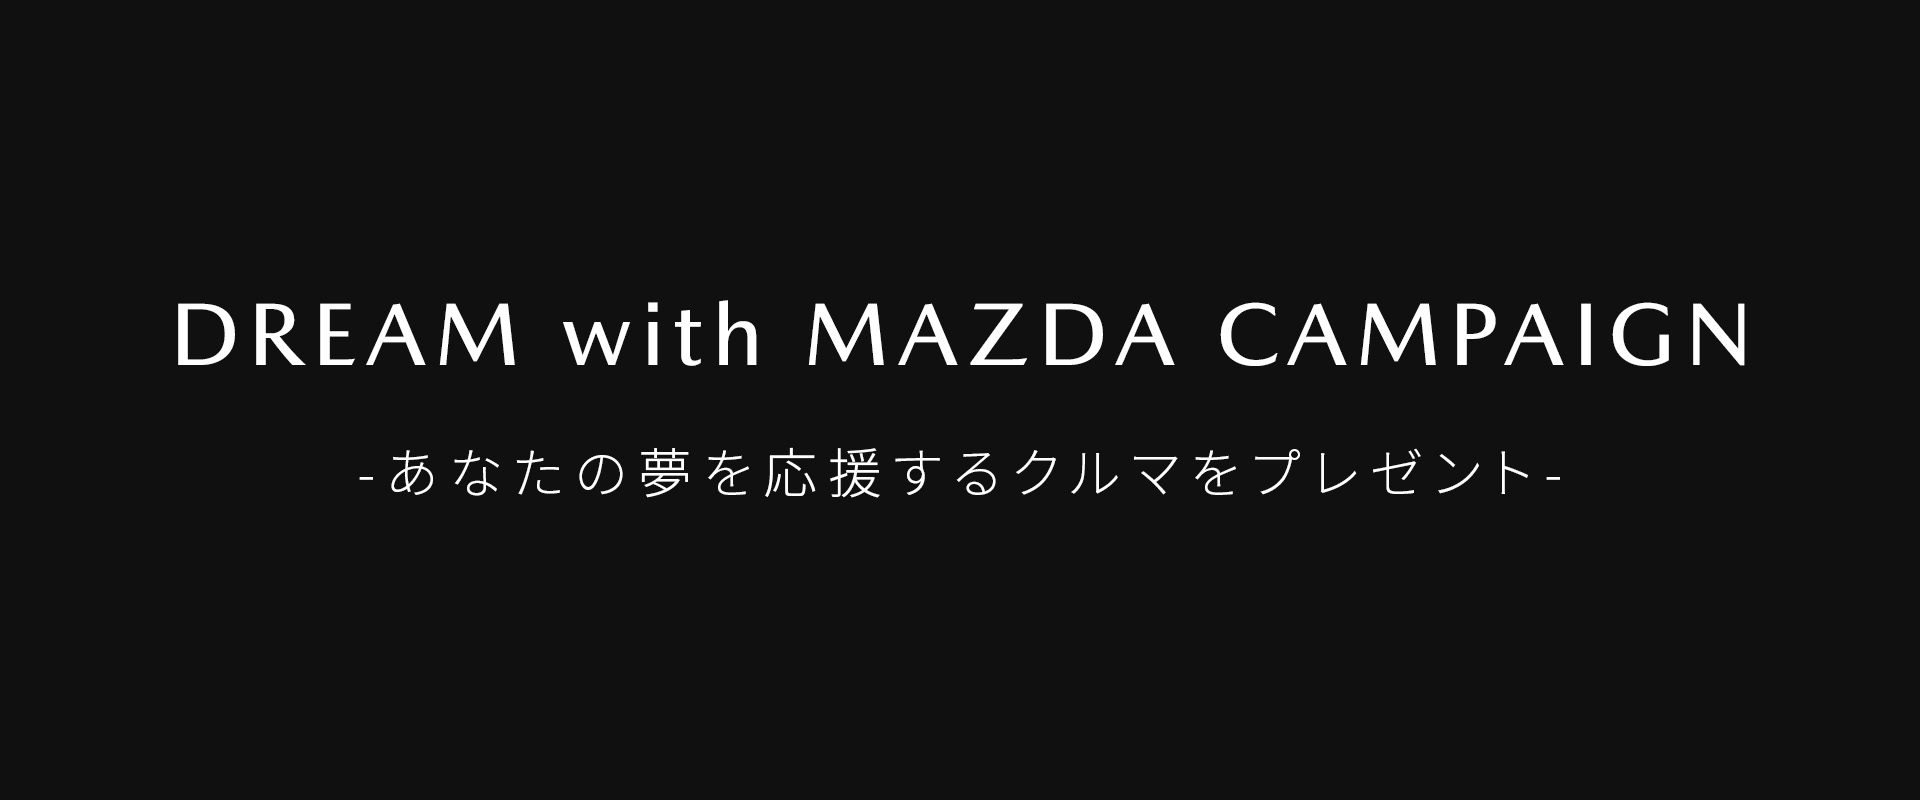 DREAM with MAZDA CAMPAIGN - あなたの夢を応援するクルマをプレゼント -